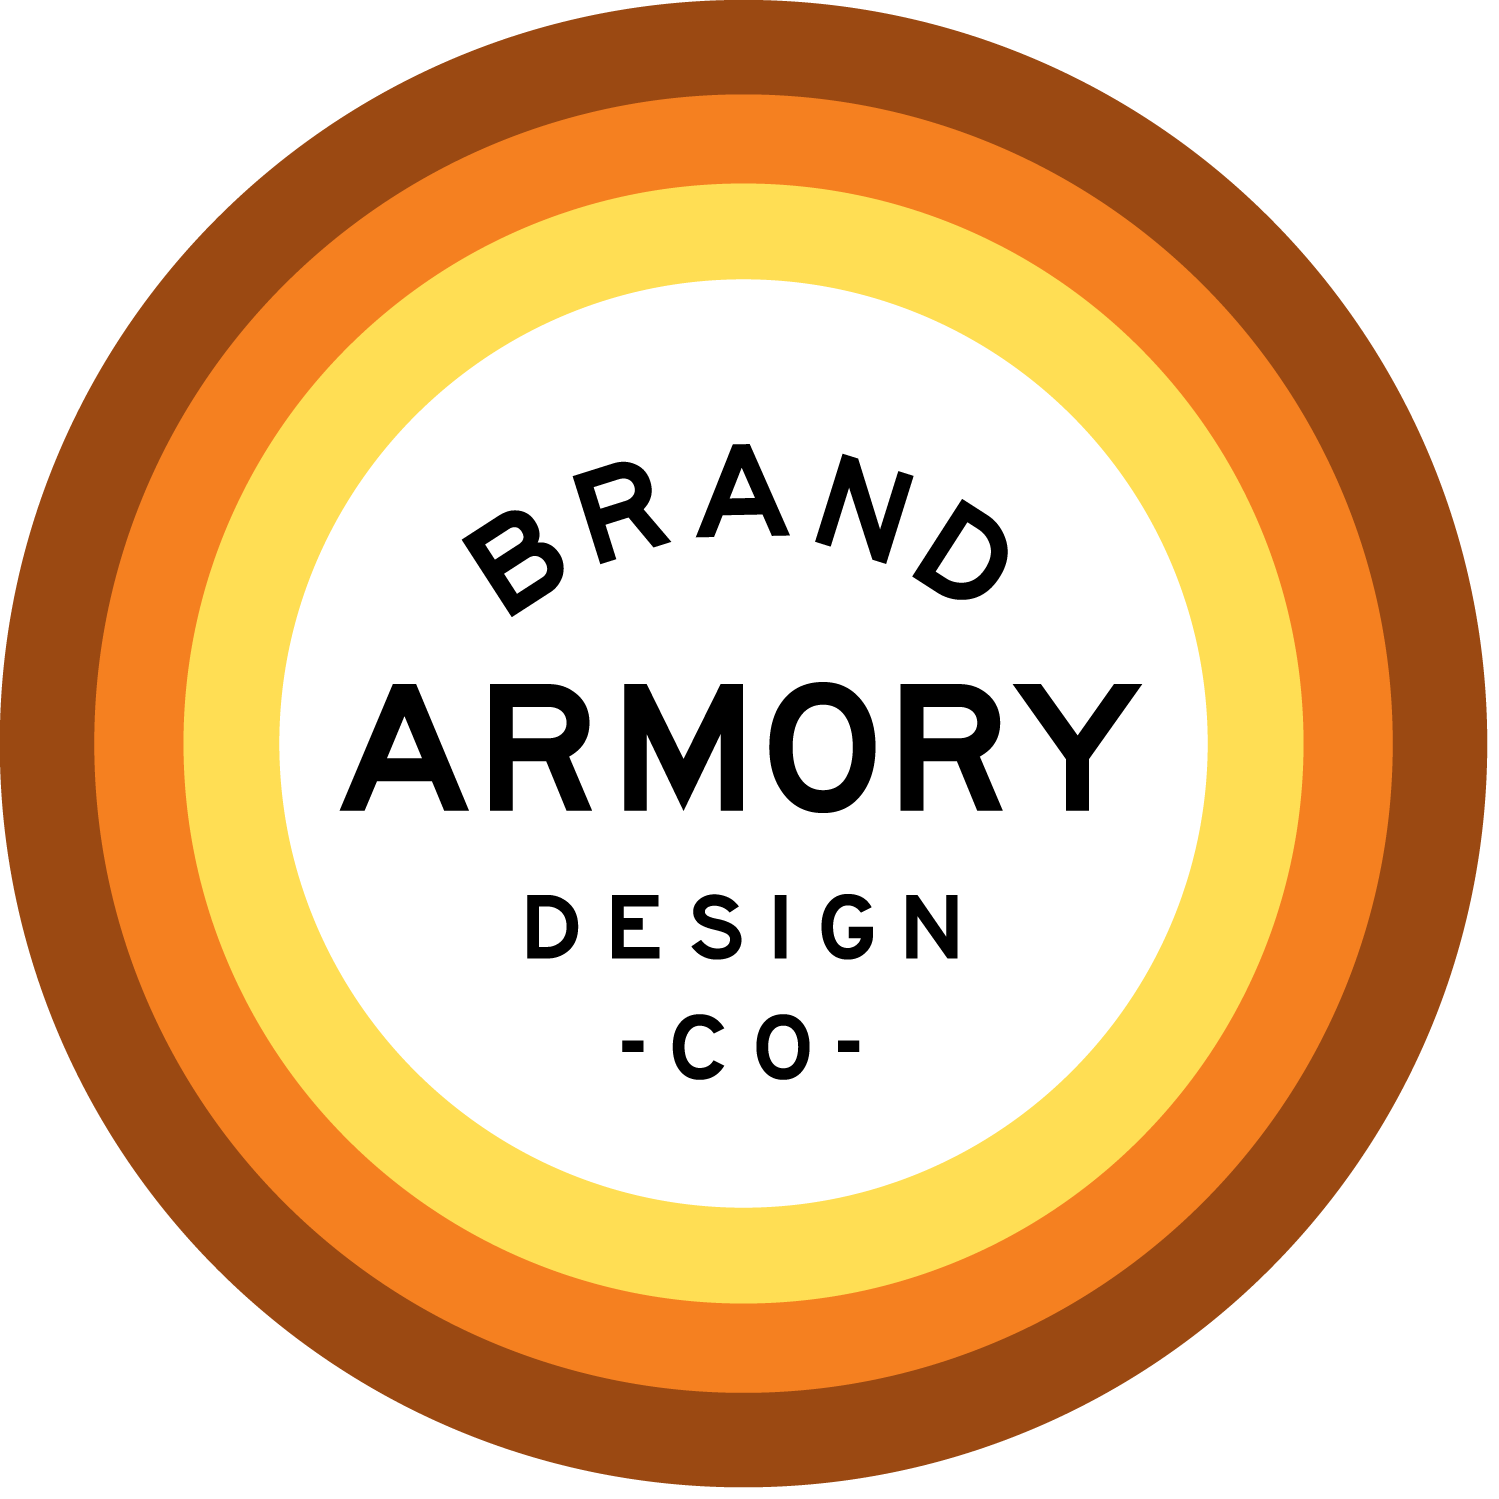 Brand Armory Design Co.